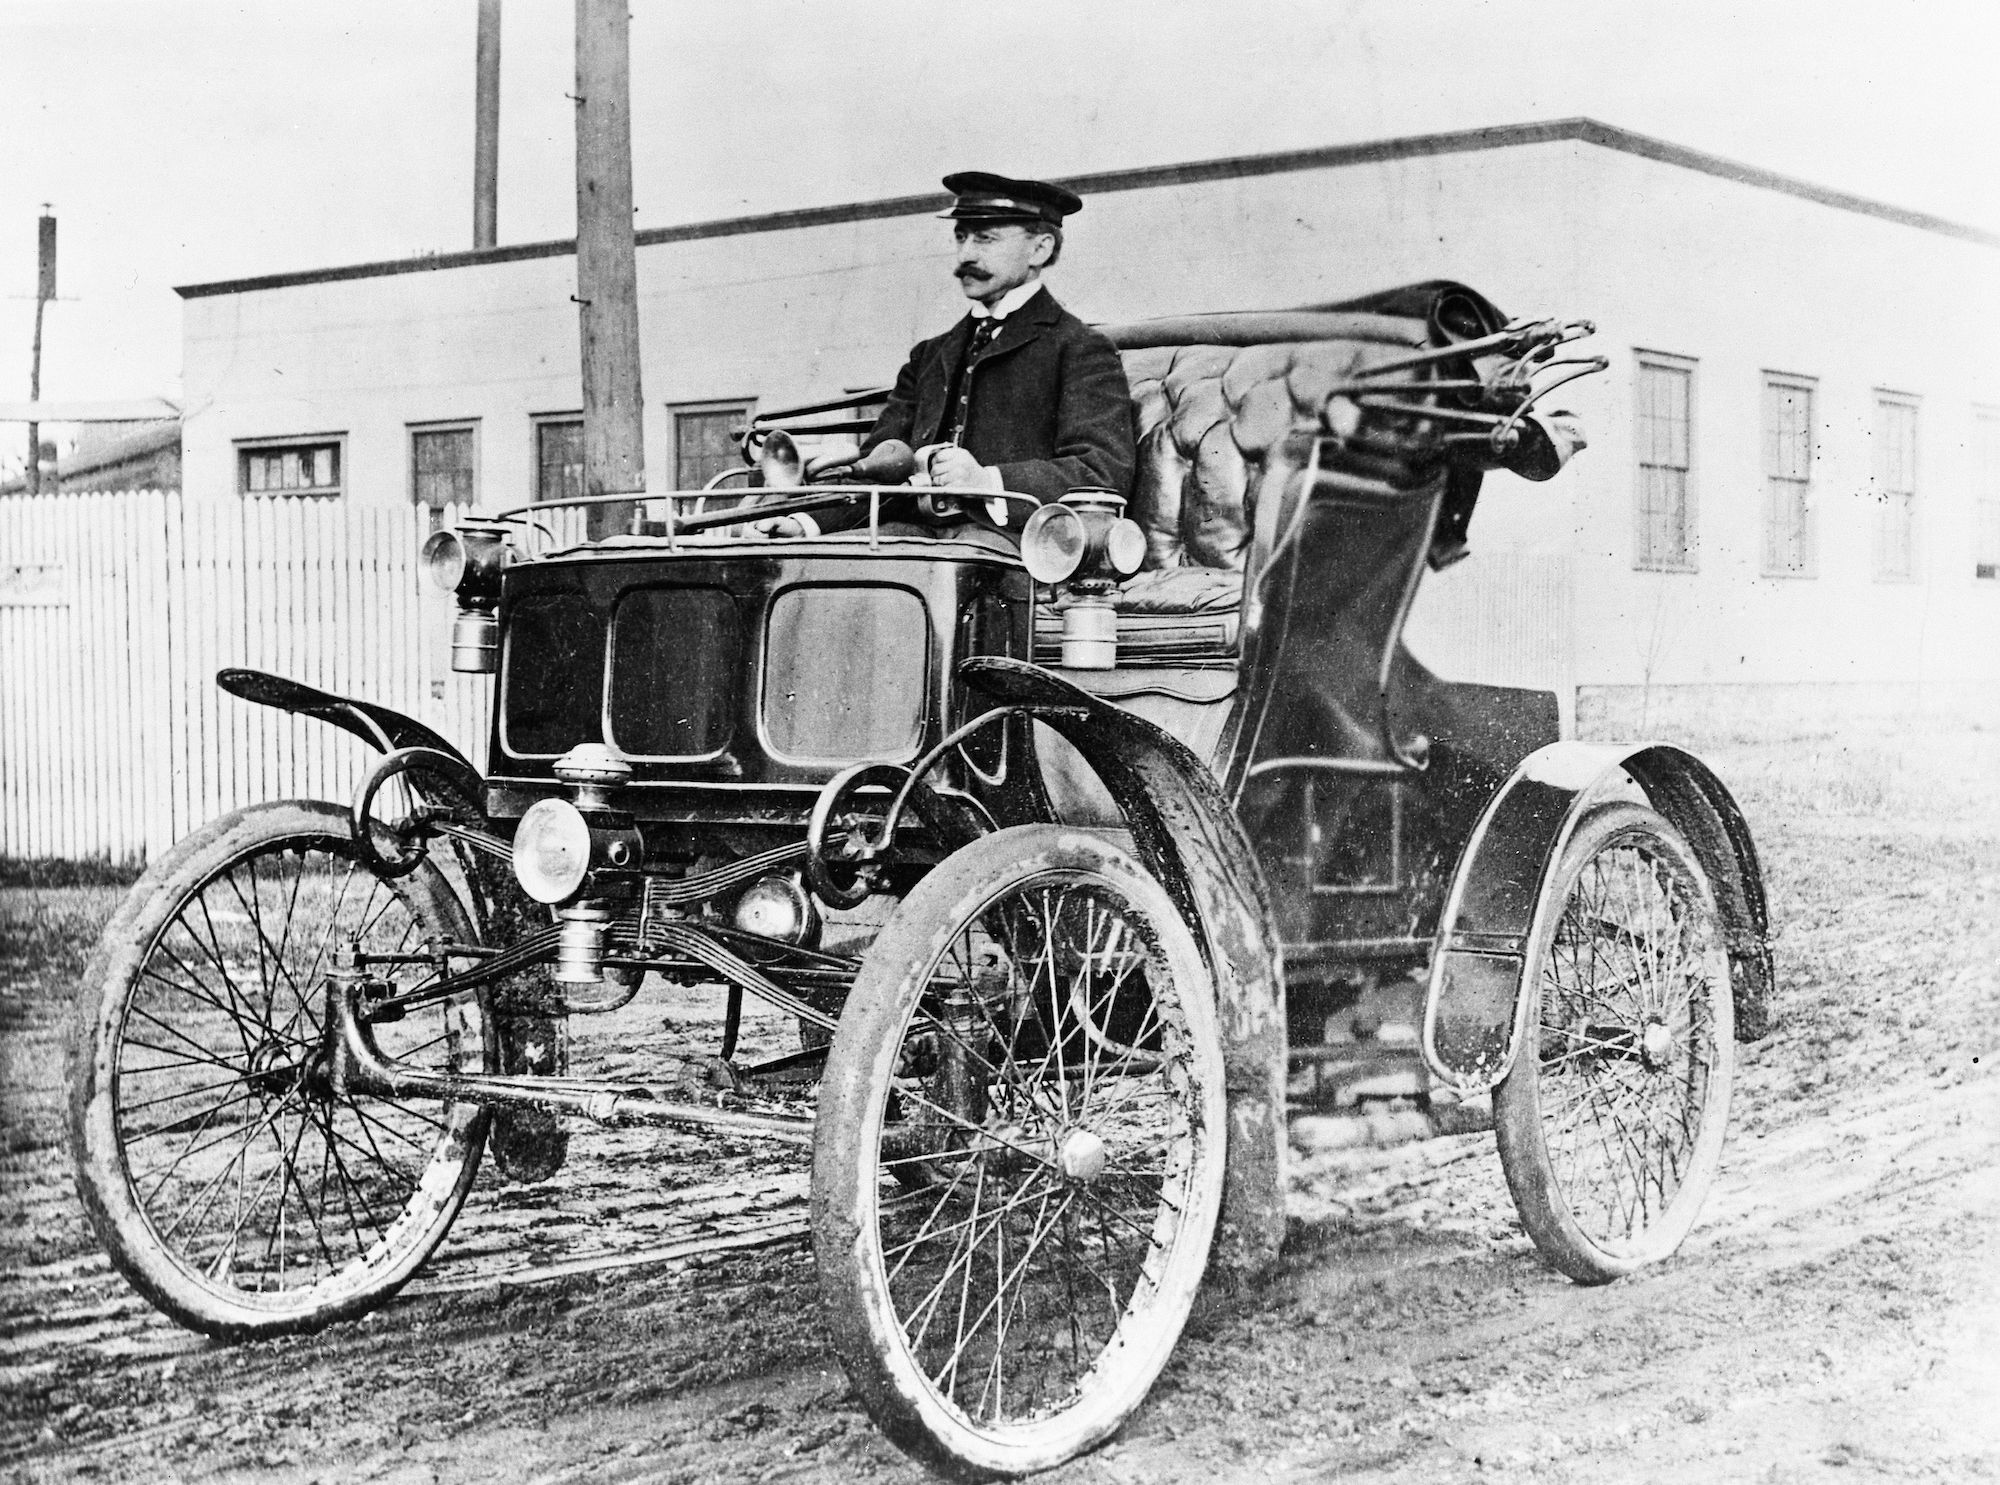 Ô tô ra đời năm nào? Lịch sử về chiếc ô tô đầu tiên